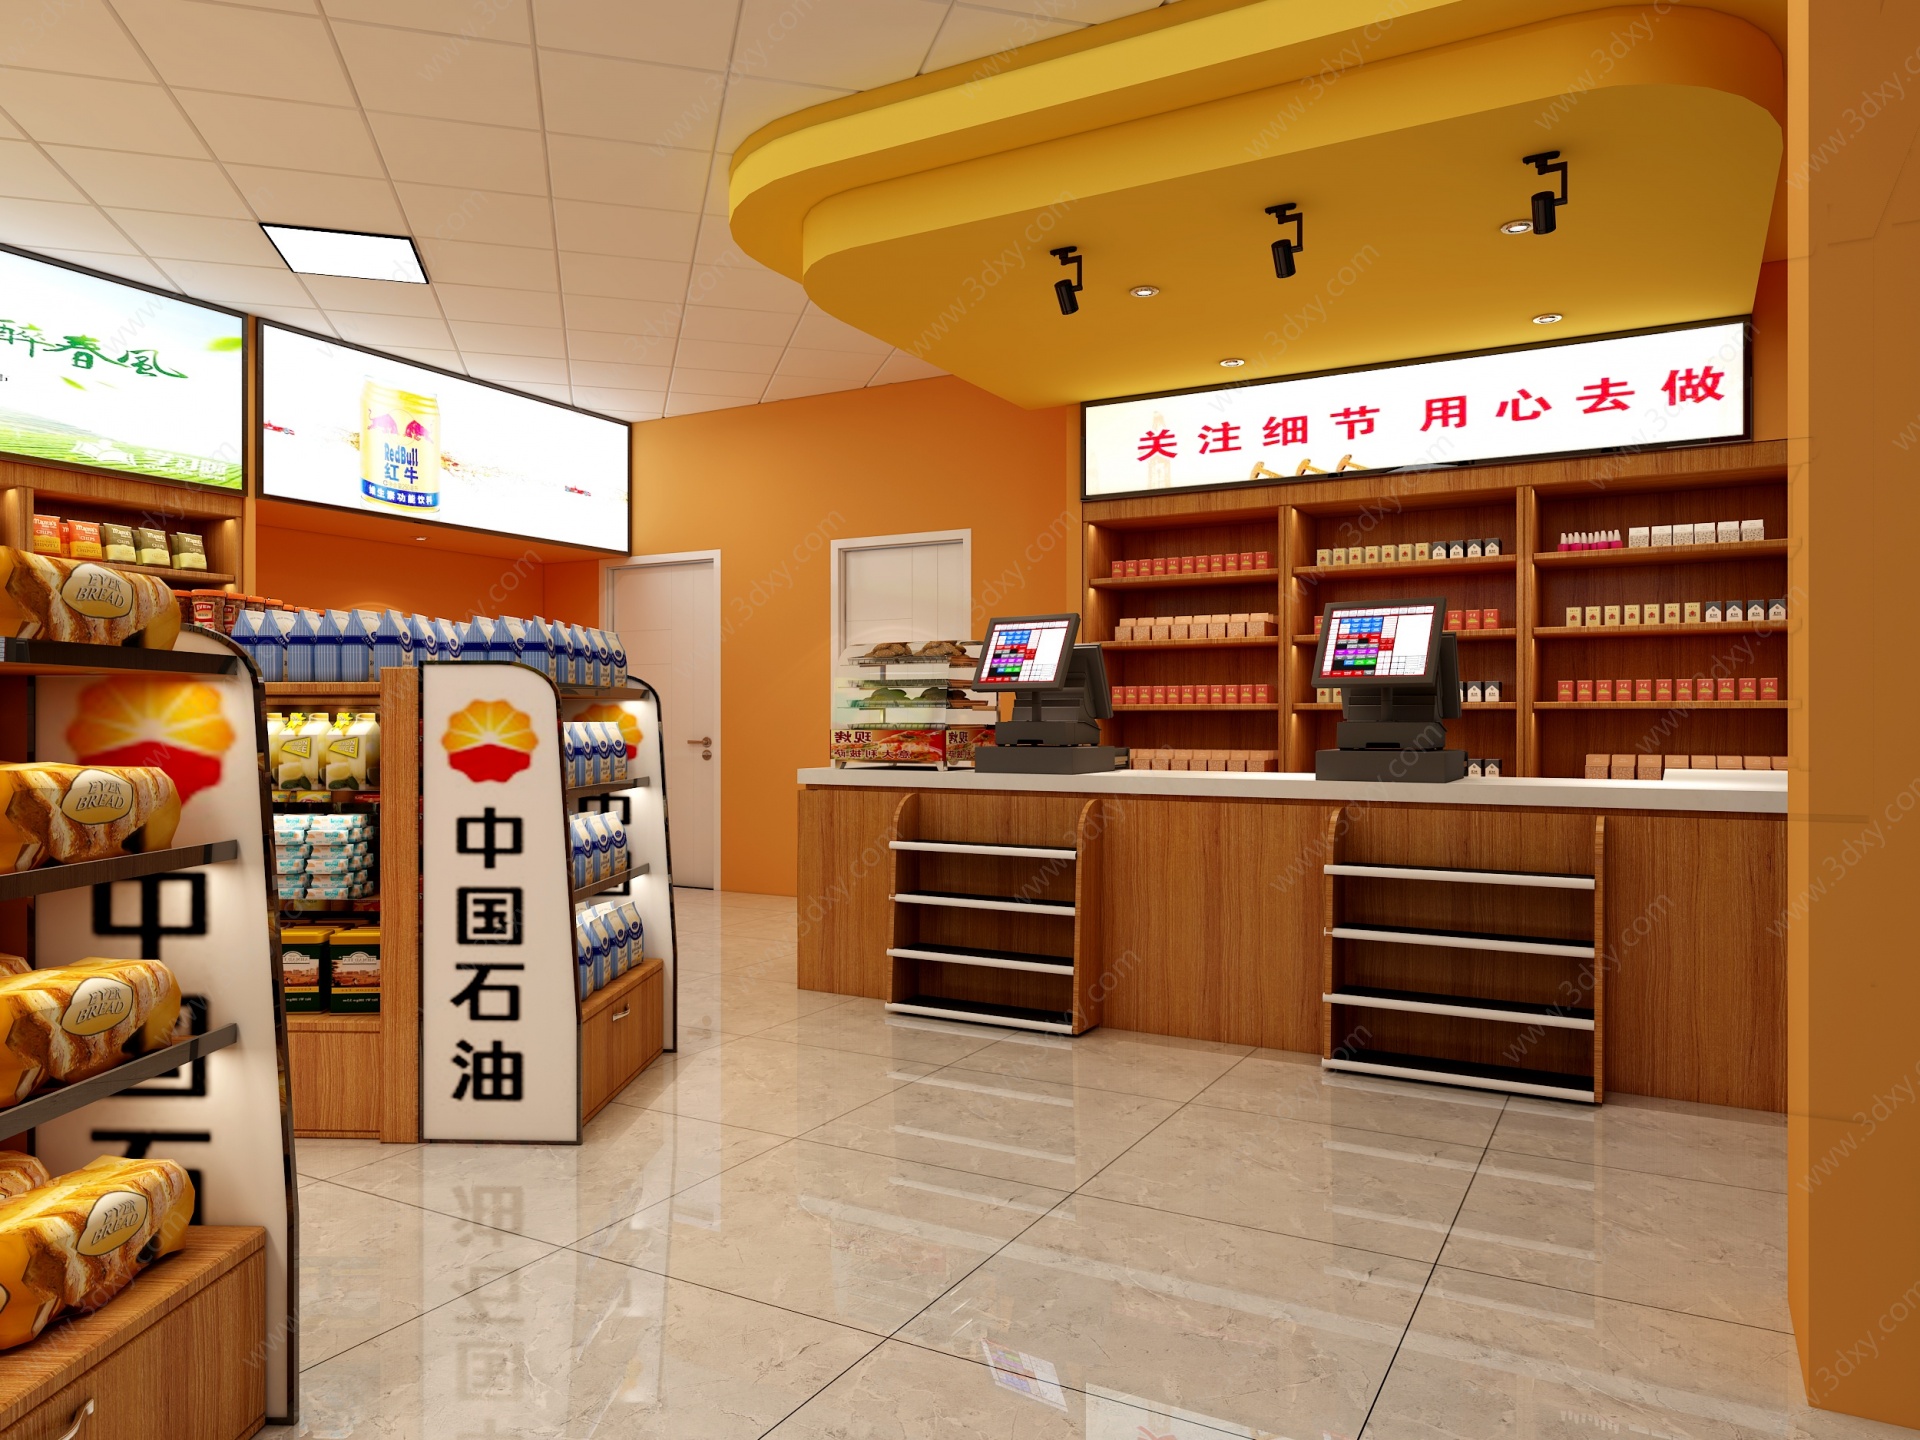 现代中国石油超市3D模型